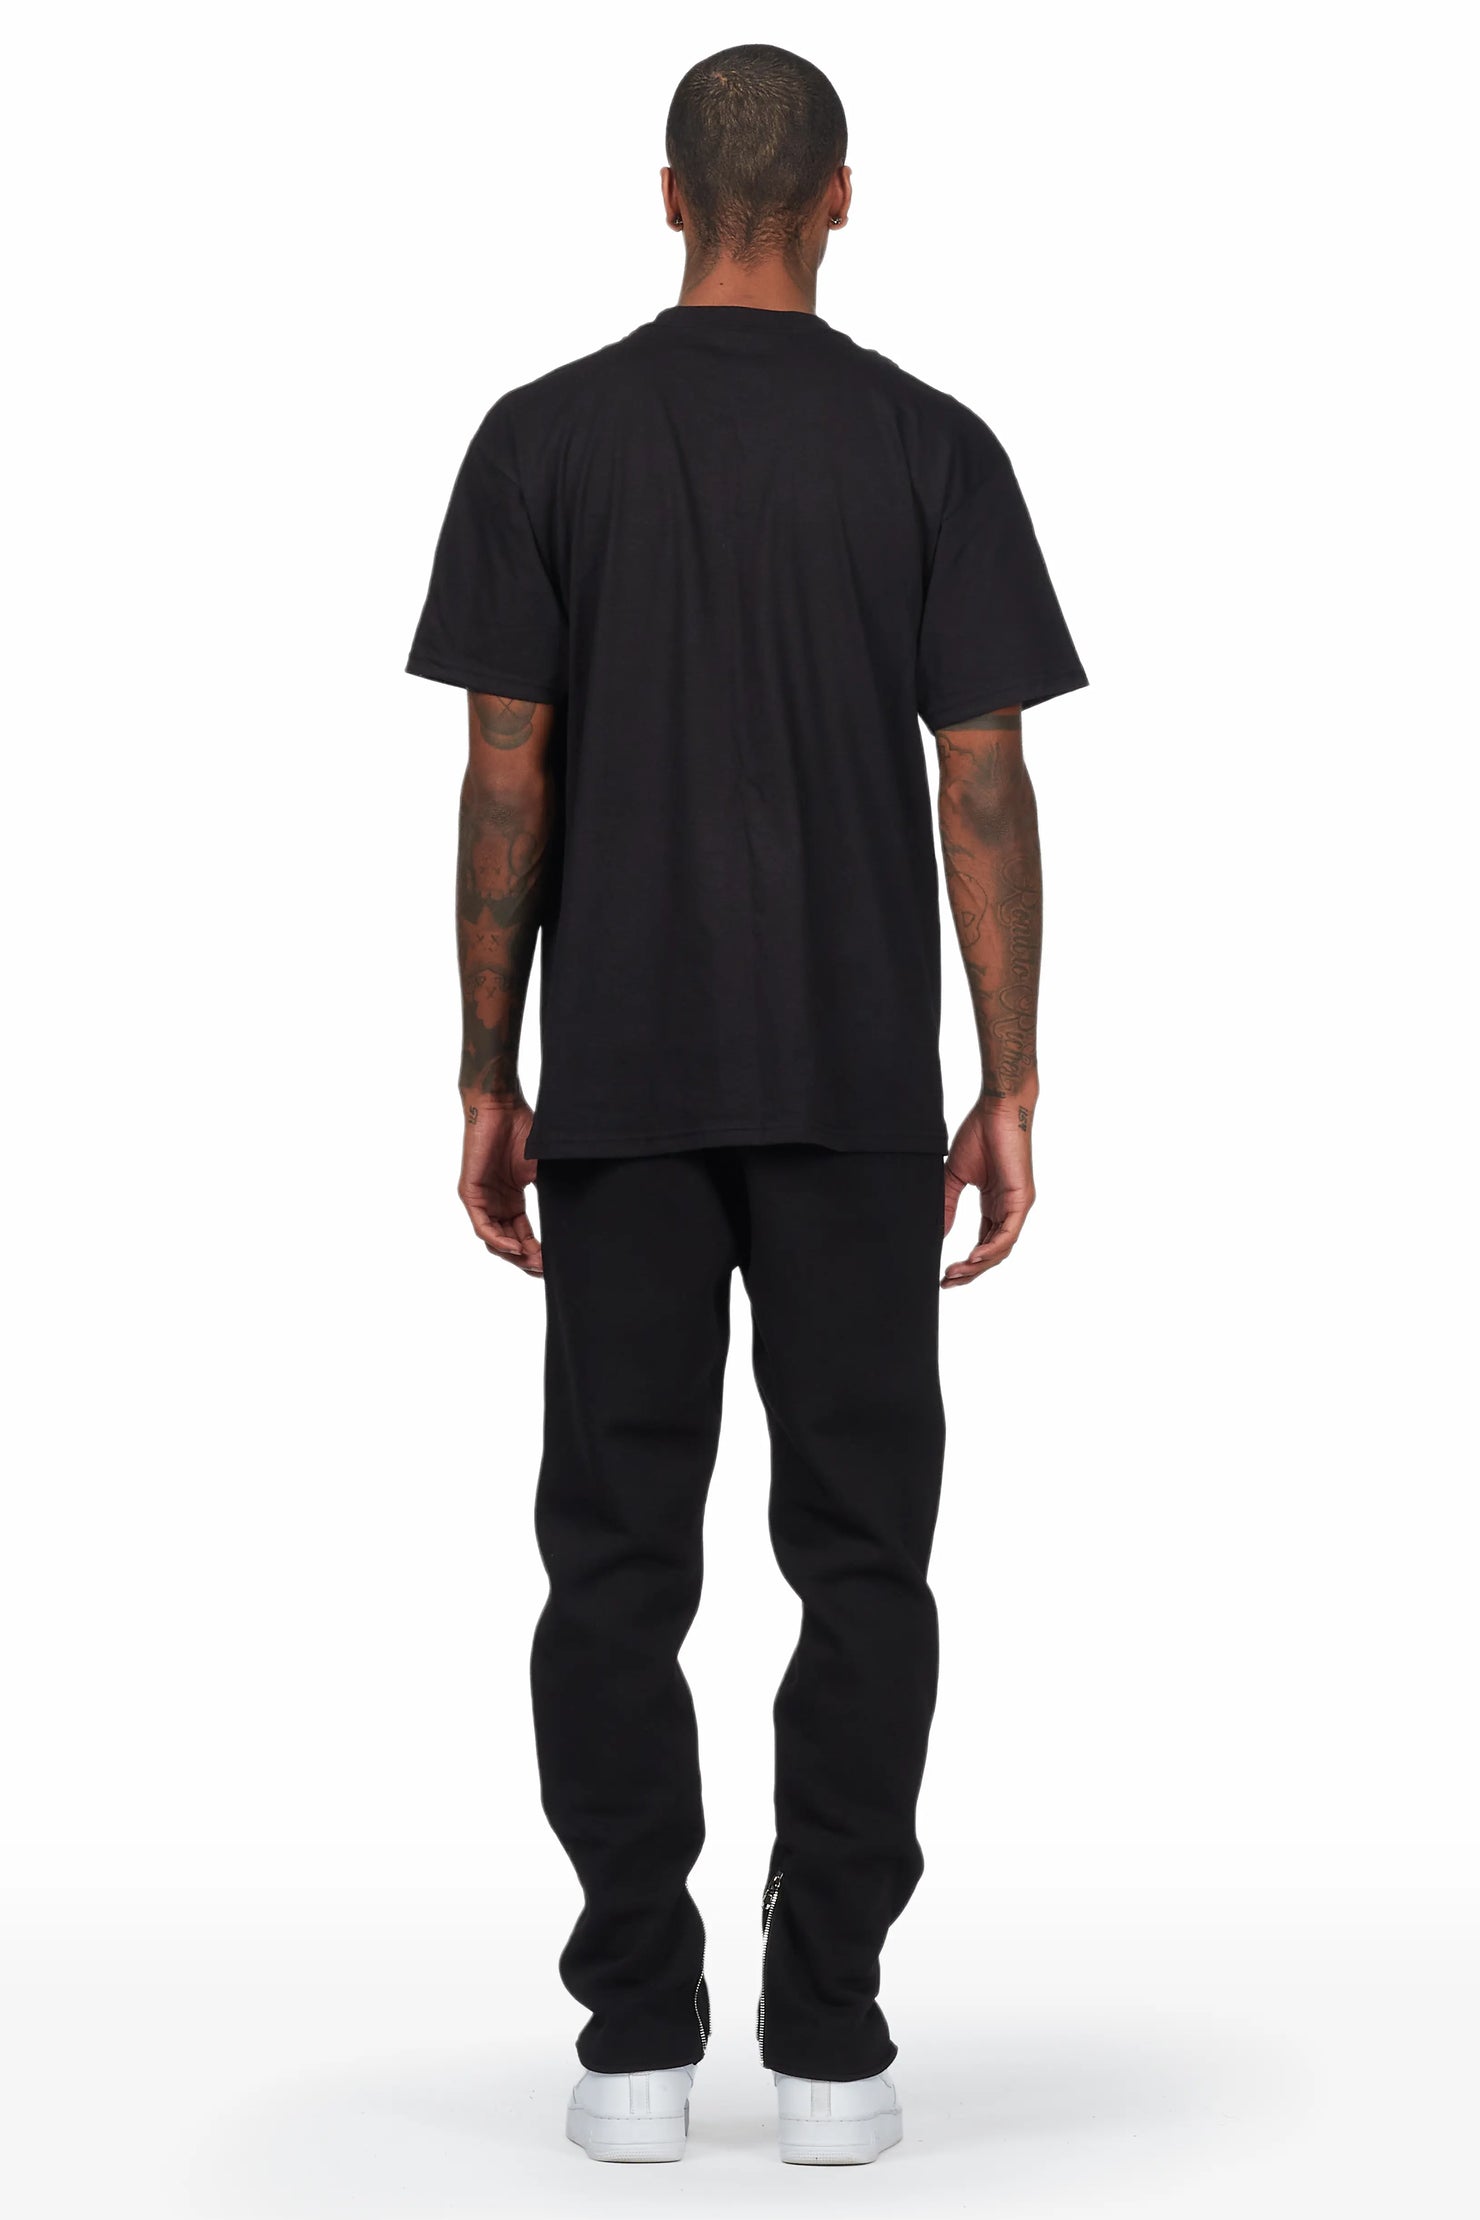 Westy Black T-Shirt Slim Fit Track Set